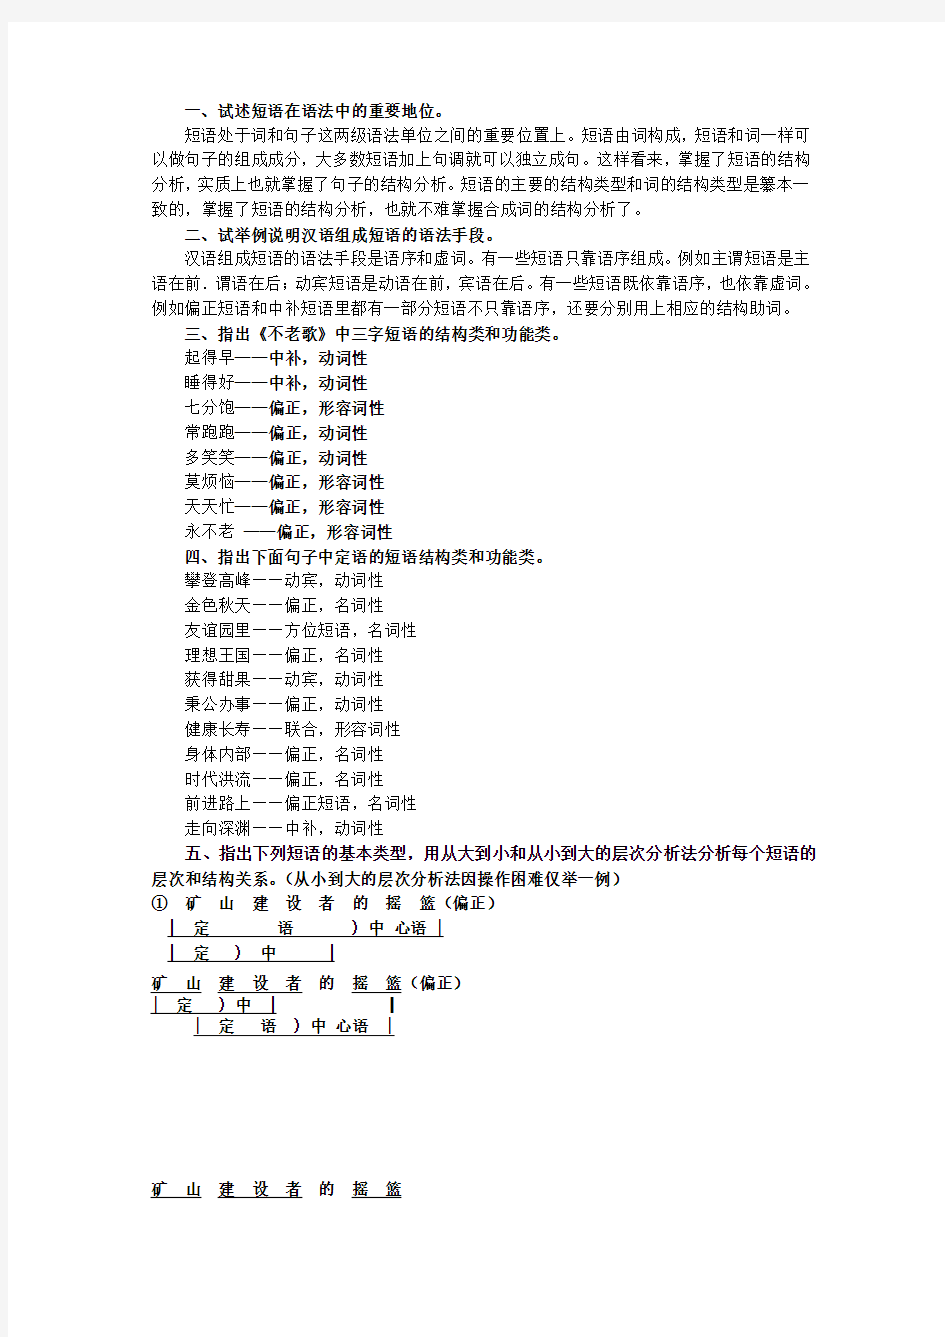 黄廖《现代汉语》下册第五章语法思考和练习四答案